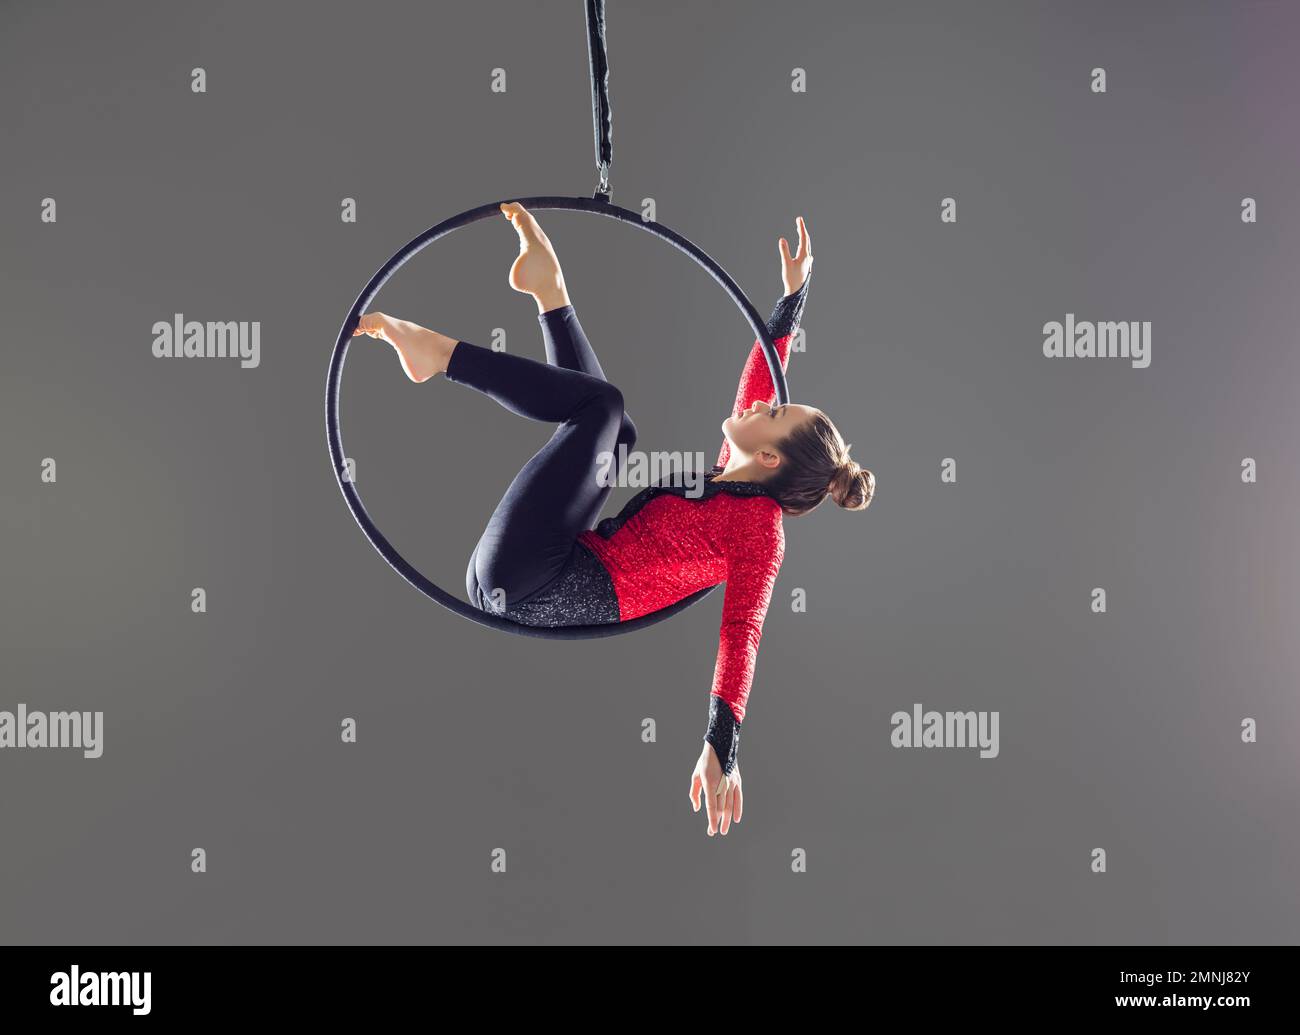 Junger akrobat, der auf einem Luftring auftritt Stockfoto